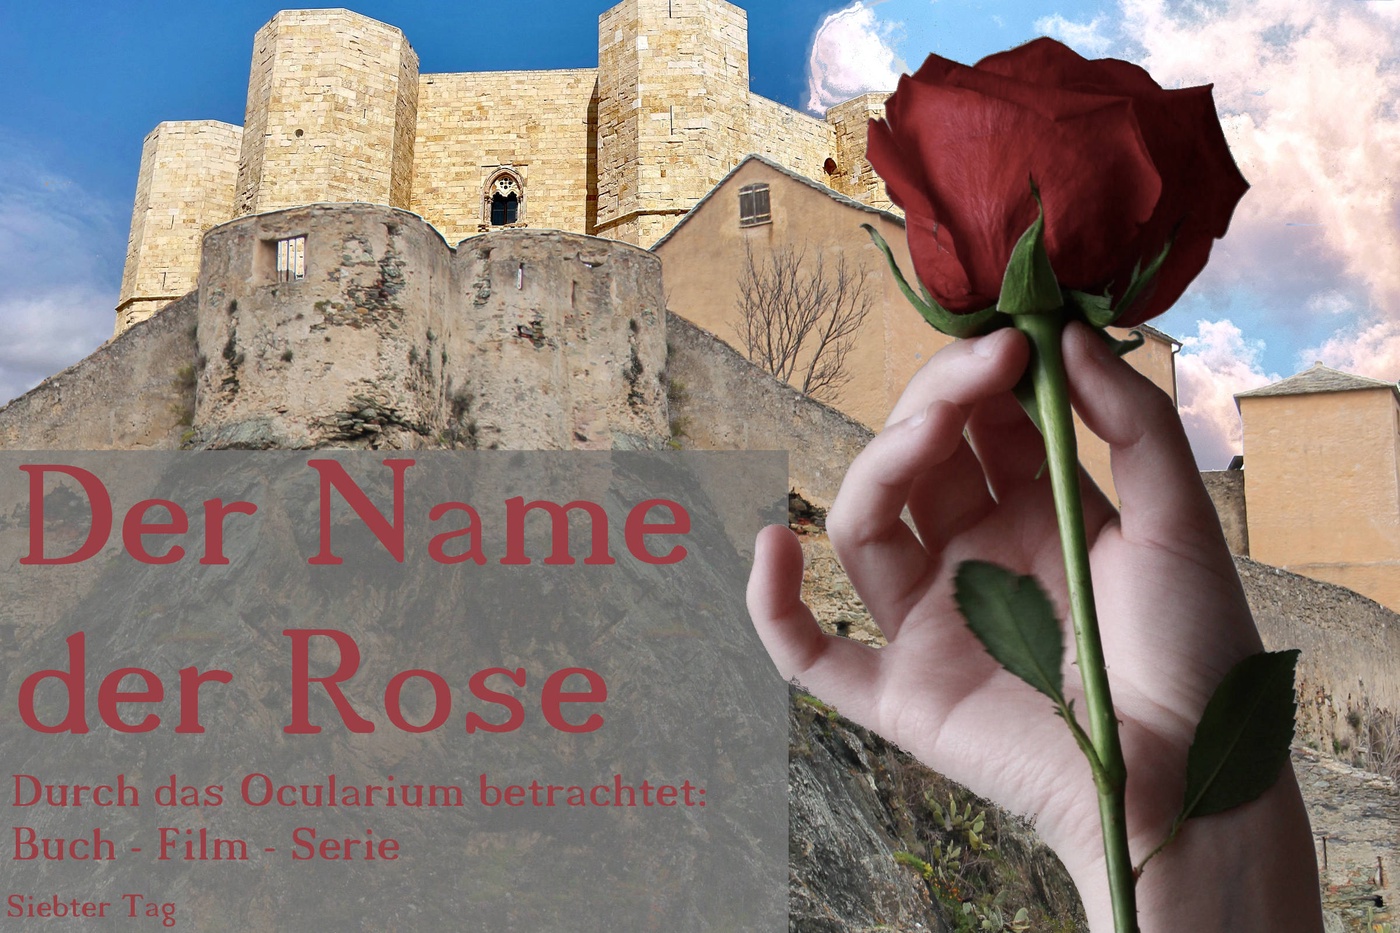 Der Name der Rose - Durch das Ocularium betrachtet: Buch - Film - Serie (9)